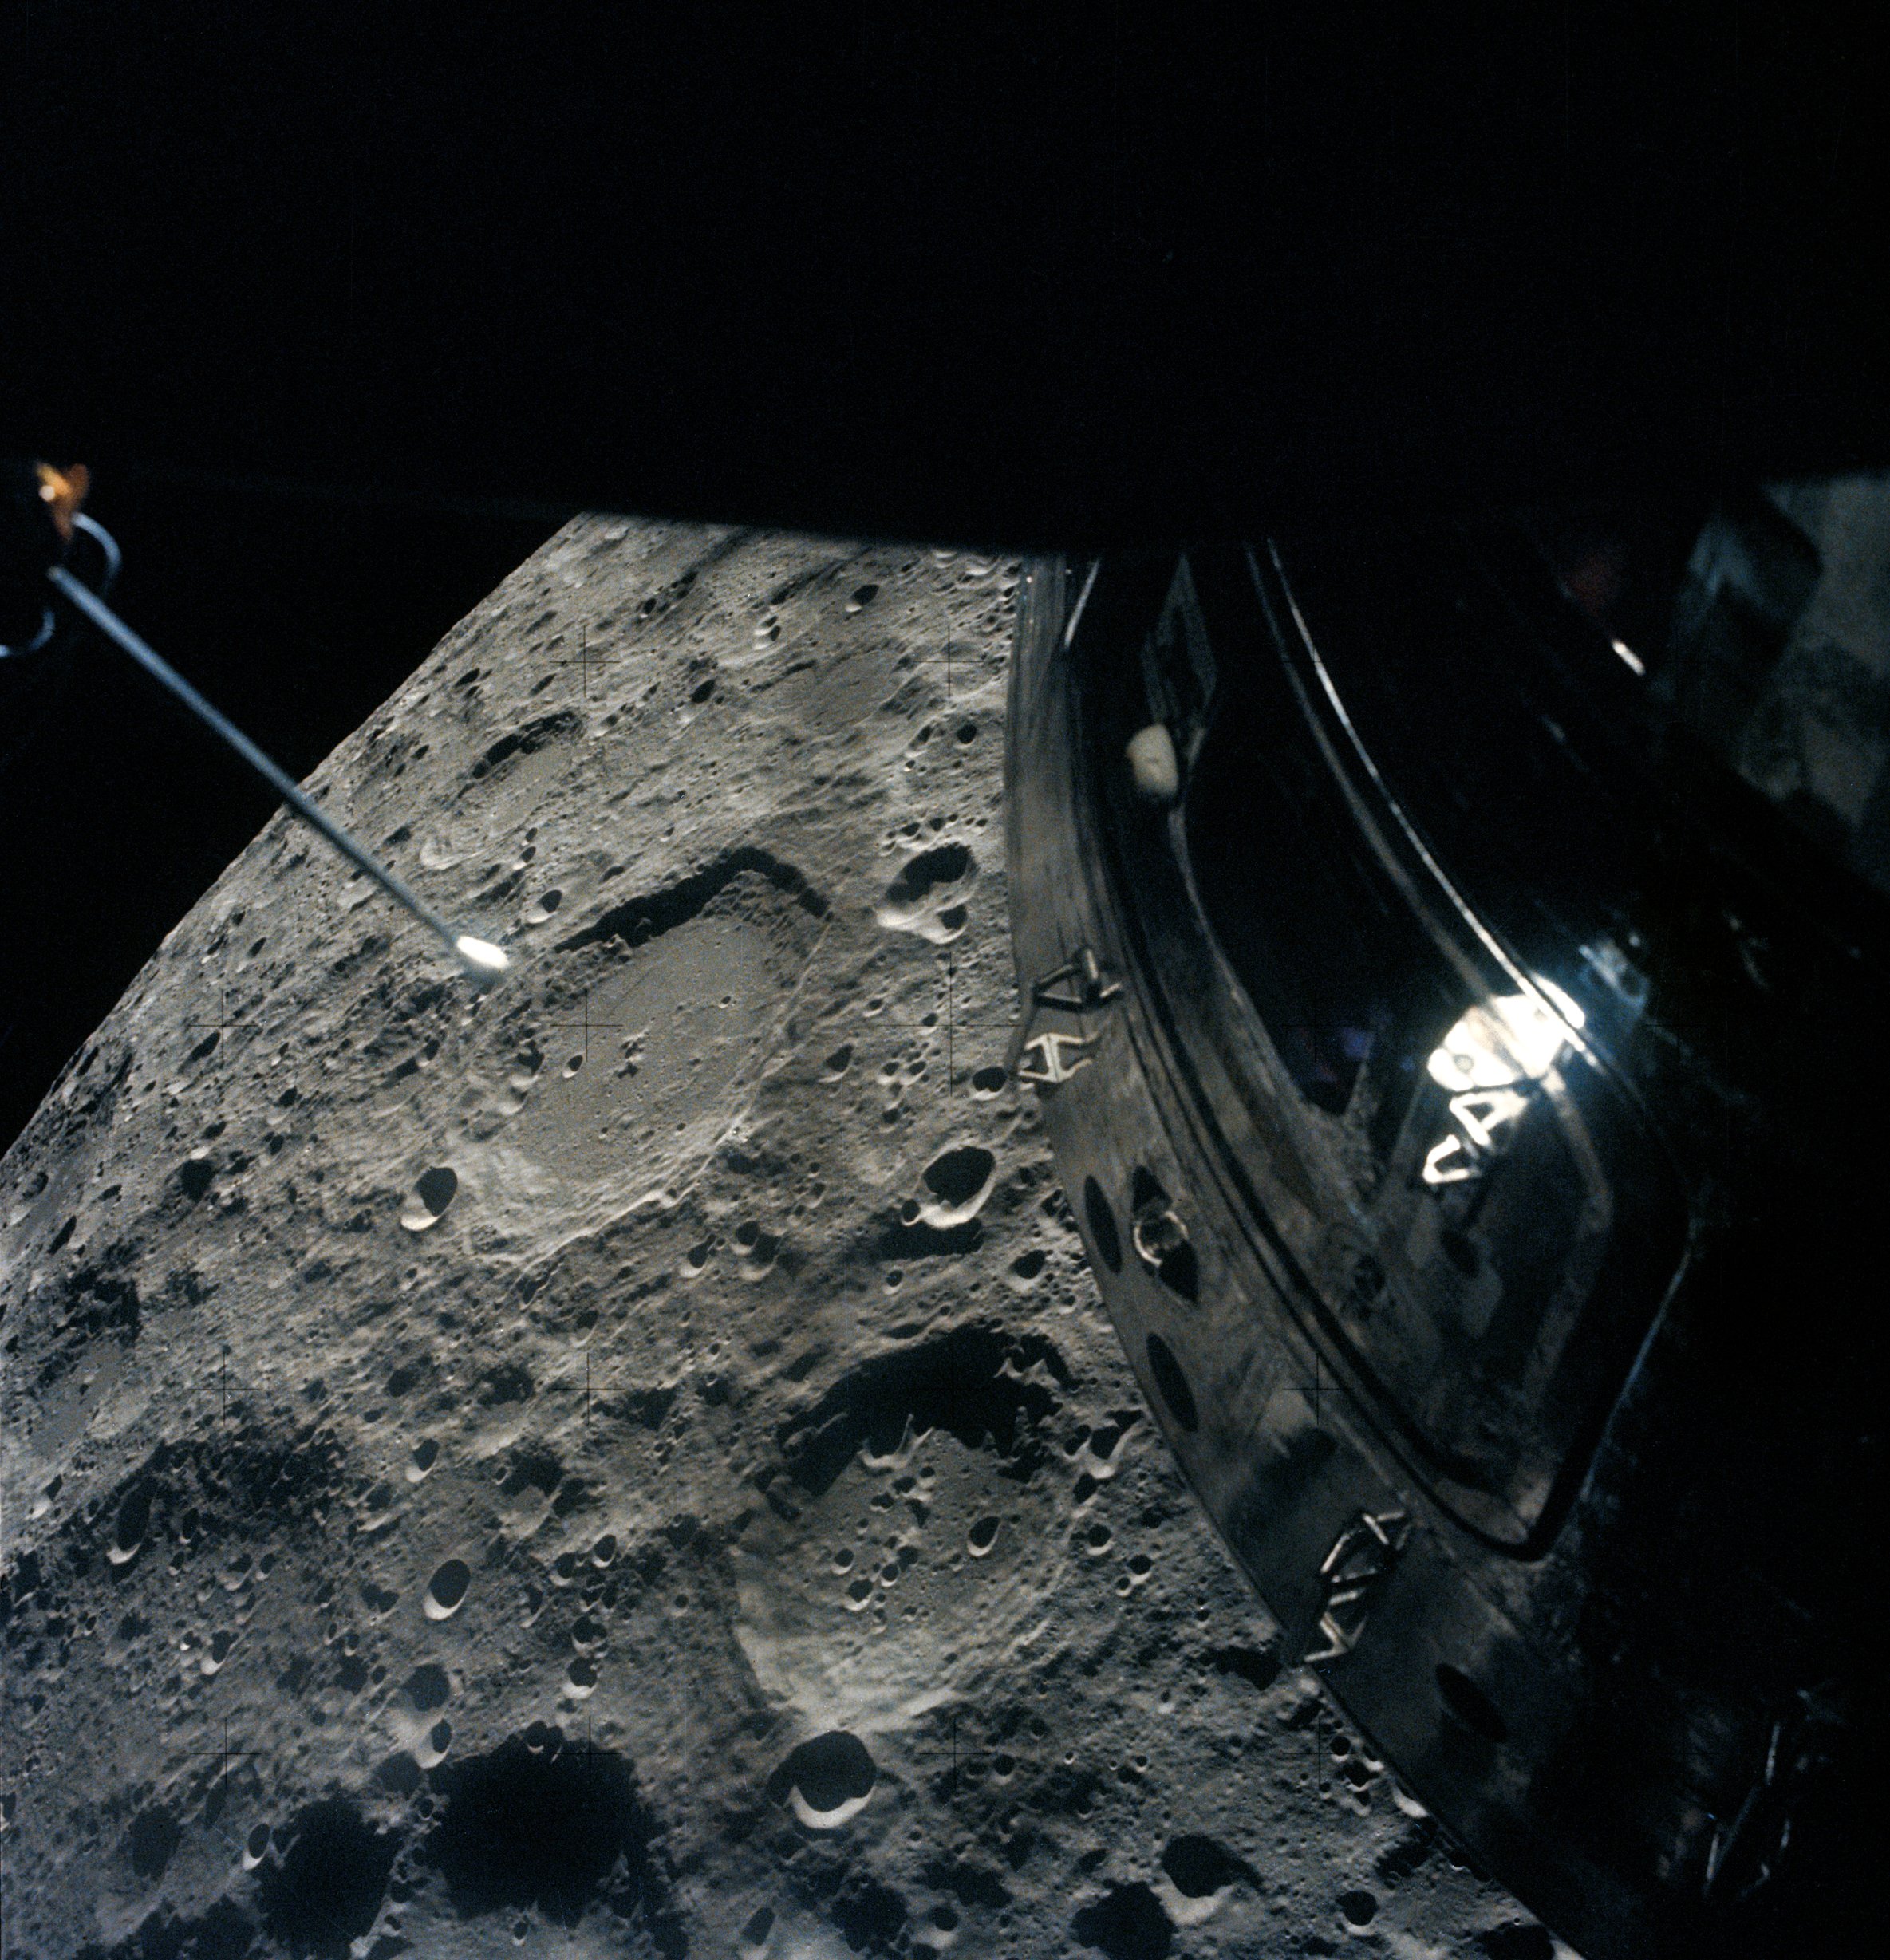 Moon, as seen by the Apollo 13 crew